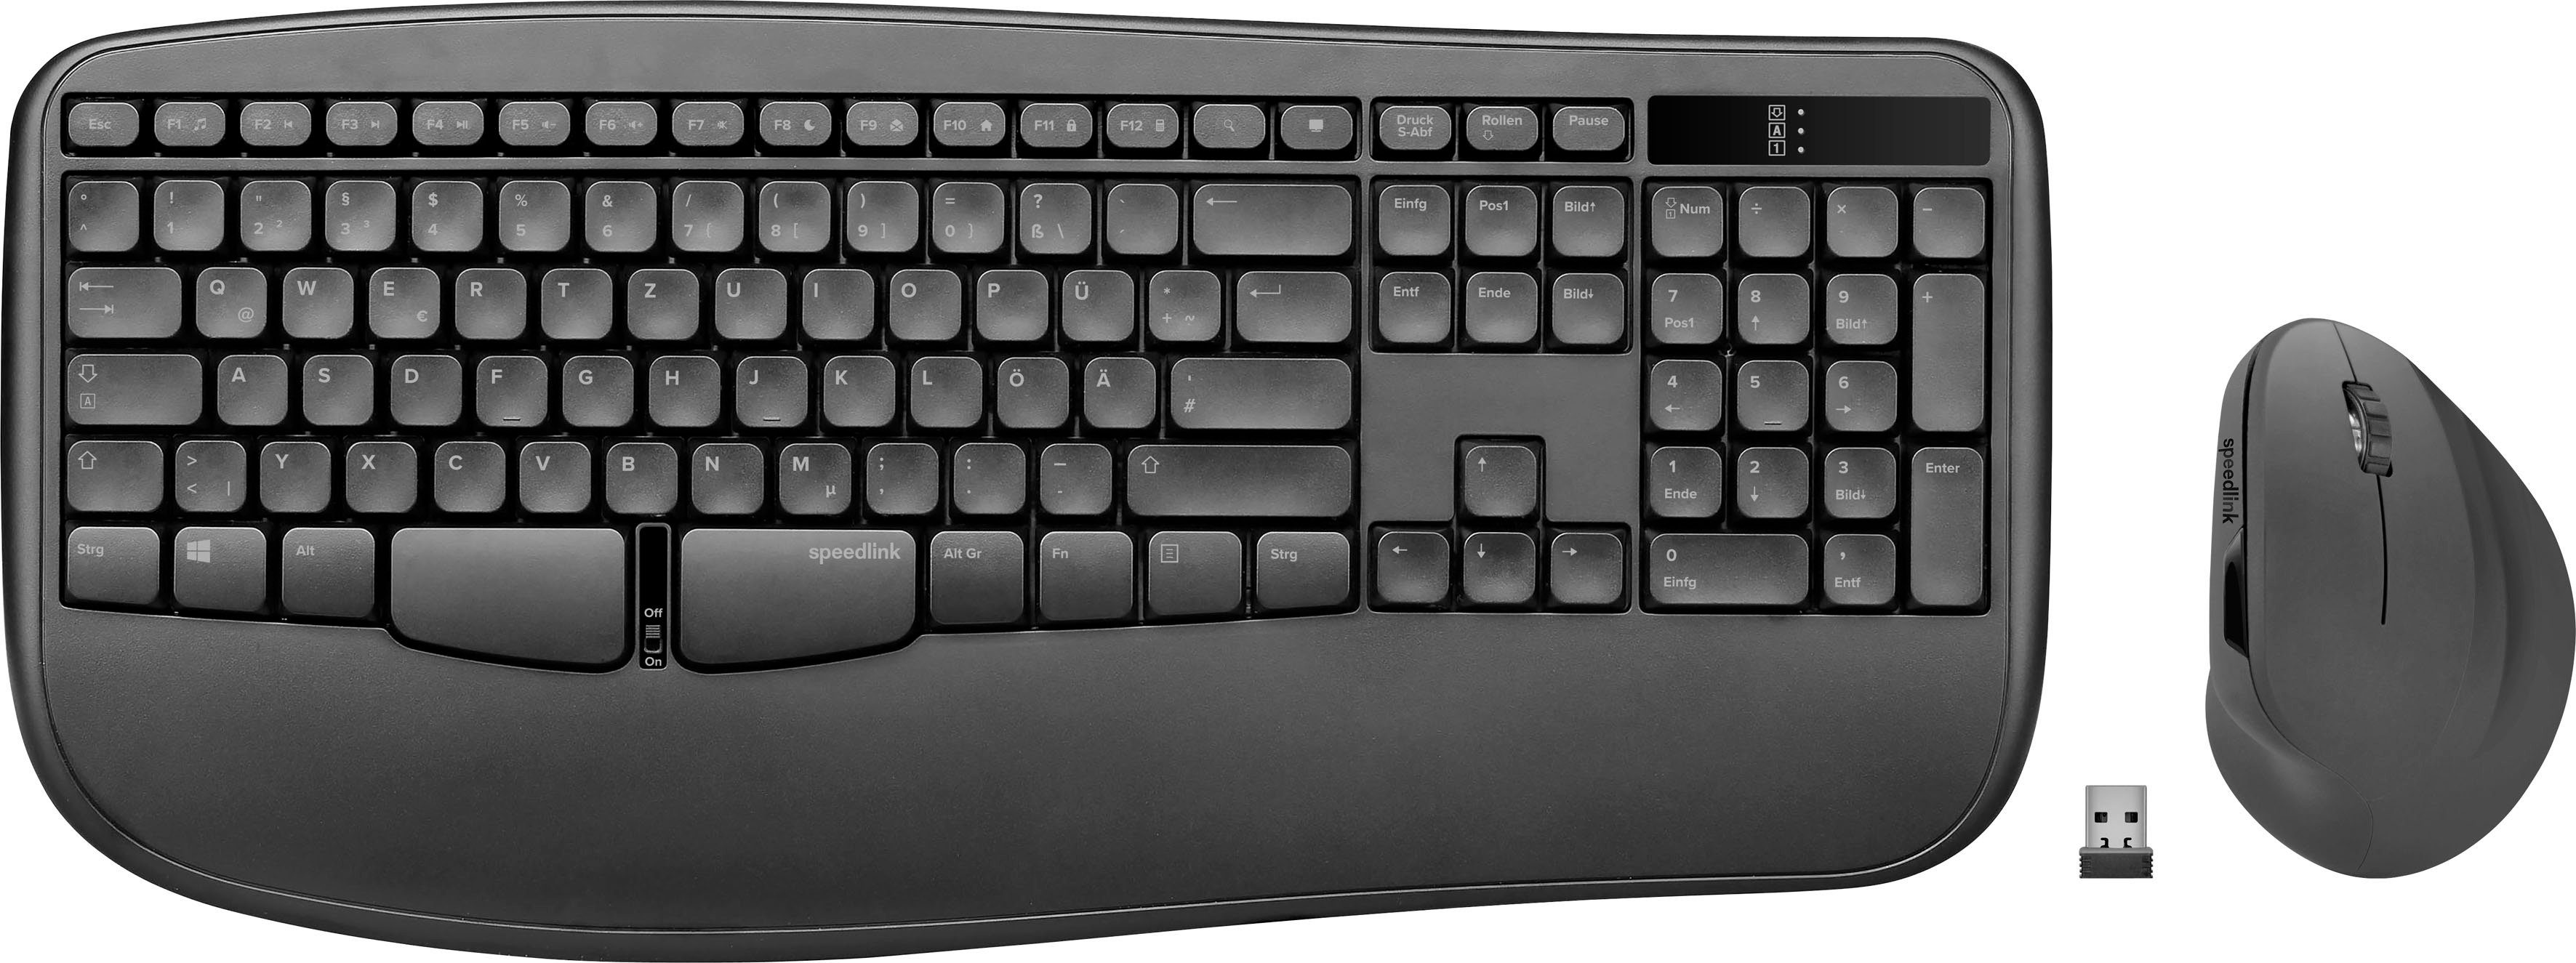 Speedlink PIAVO Kabelloses PC Deskset Maus Tastatur Mäuse (Ergonomisch  Wireless Keyboard Mouse Set, Multimedia Tasten, Vertikale Maus, 10m  Reichweite mit 2,4-GHz-Funk)